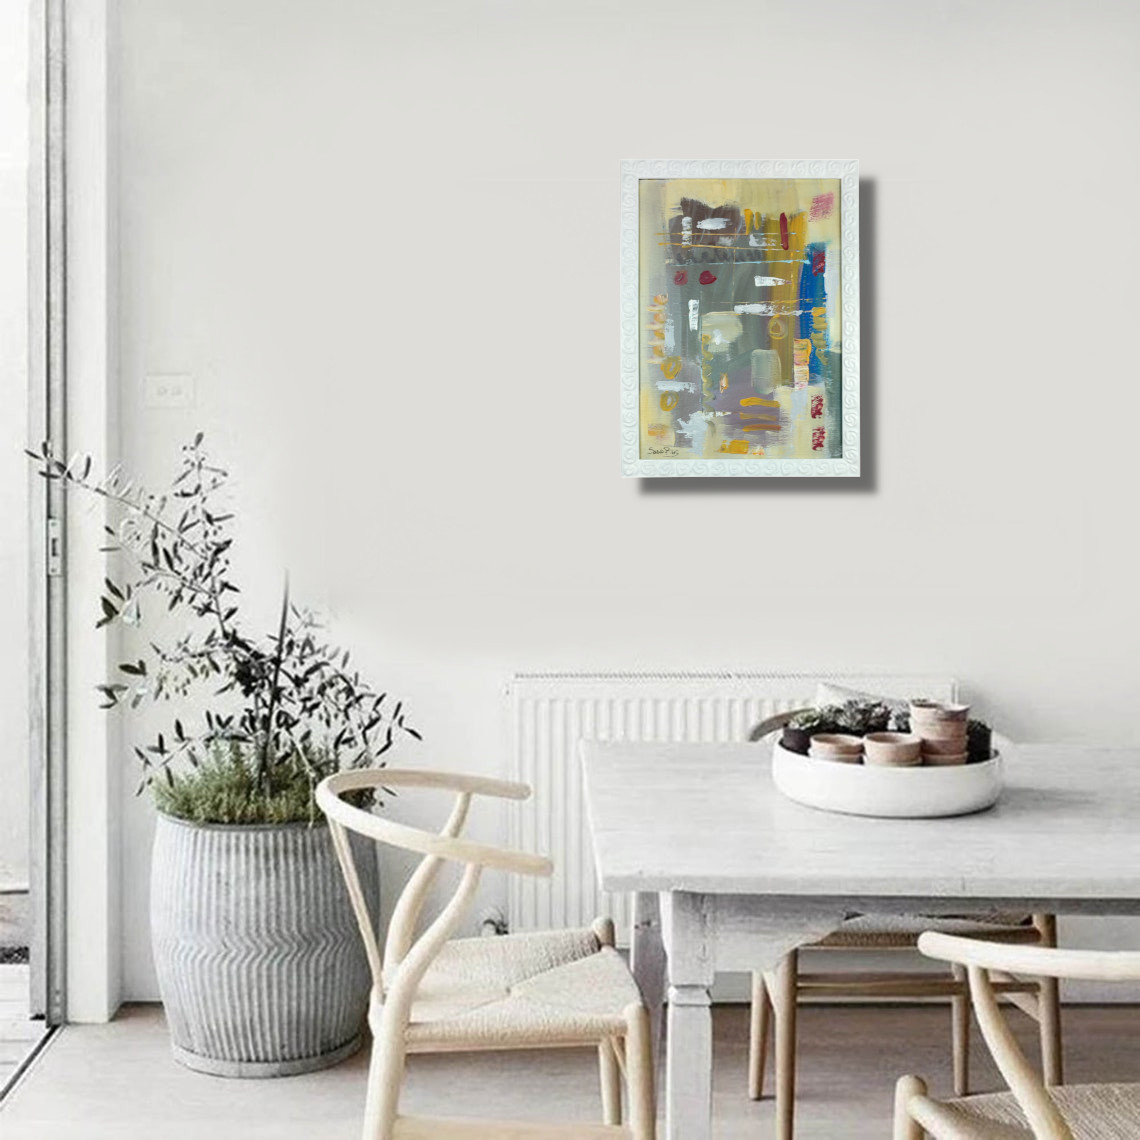 dipinti astratti per soggiorno con cornice za080 - AUTHOR'S ABSTRACT PAINTINGS